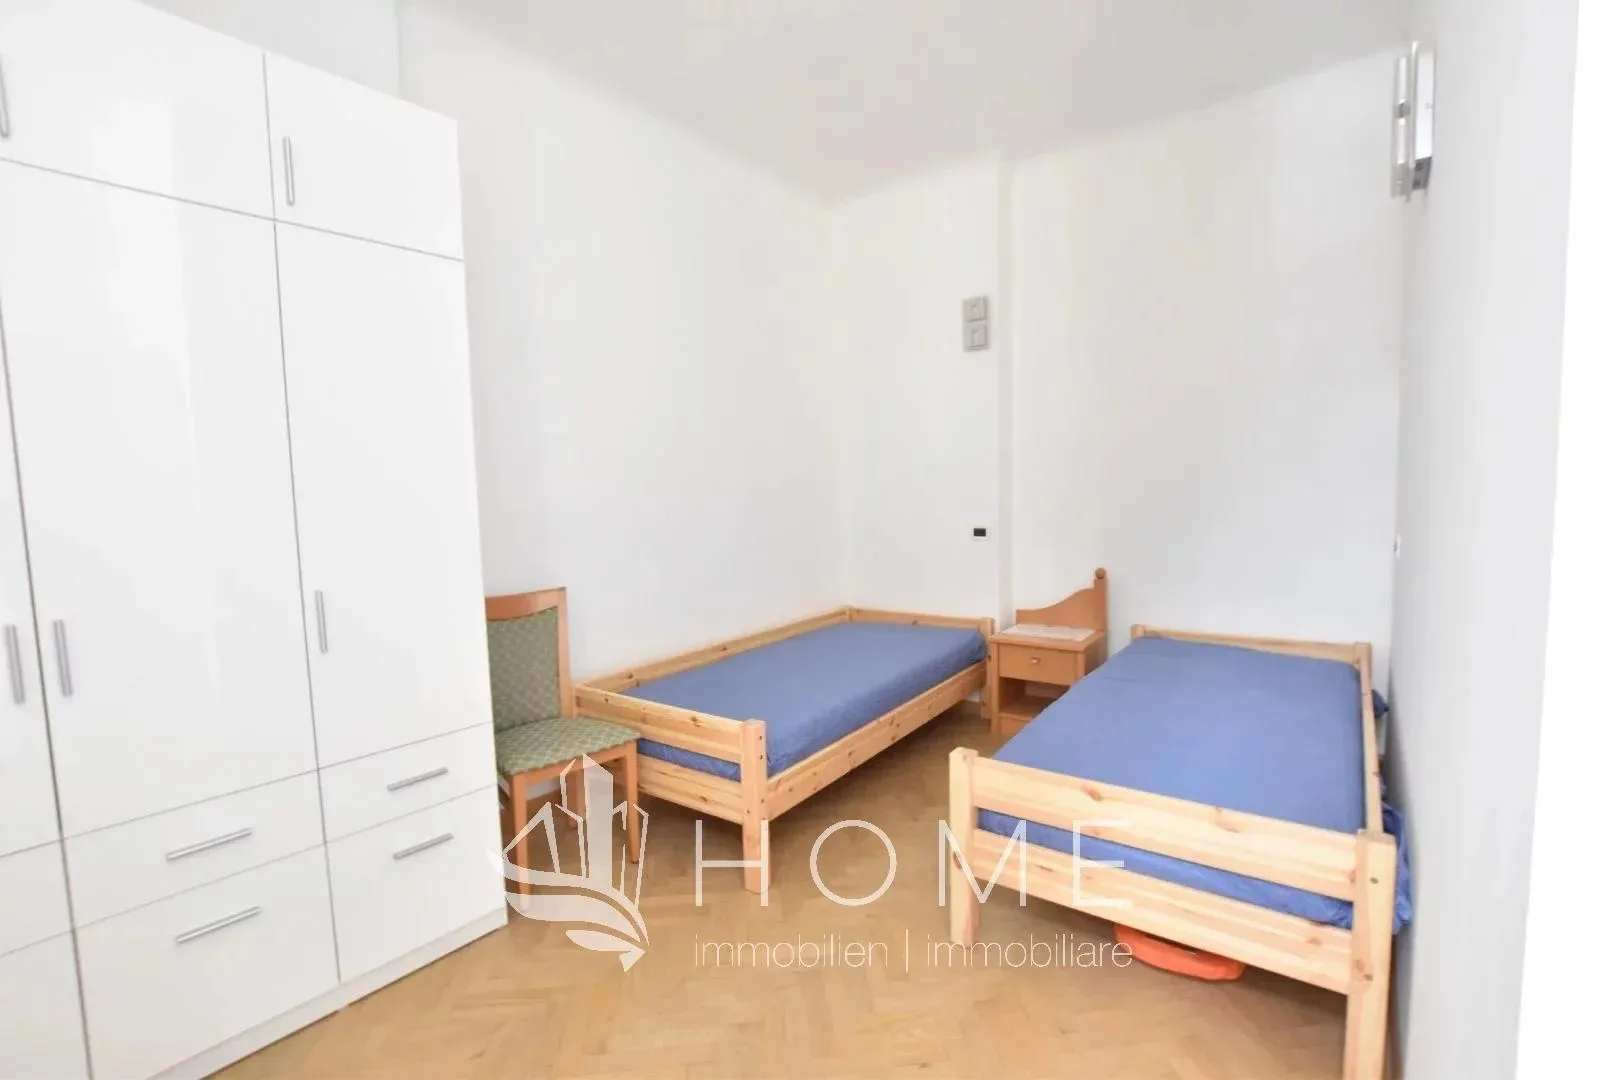 Immagine per Appartamento in vendita a Brennero via Roma